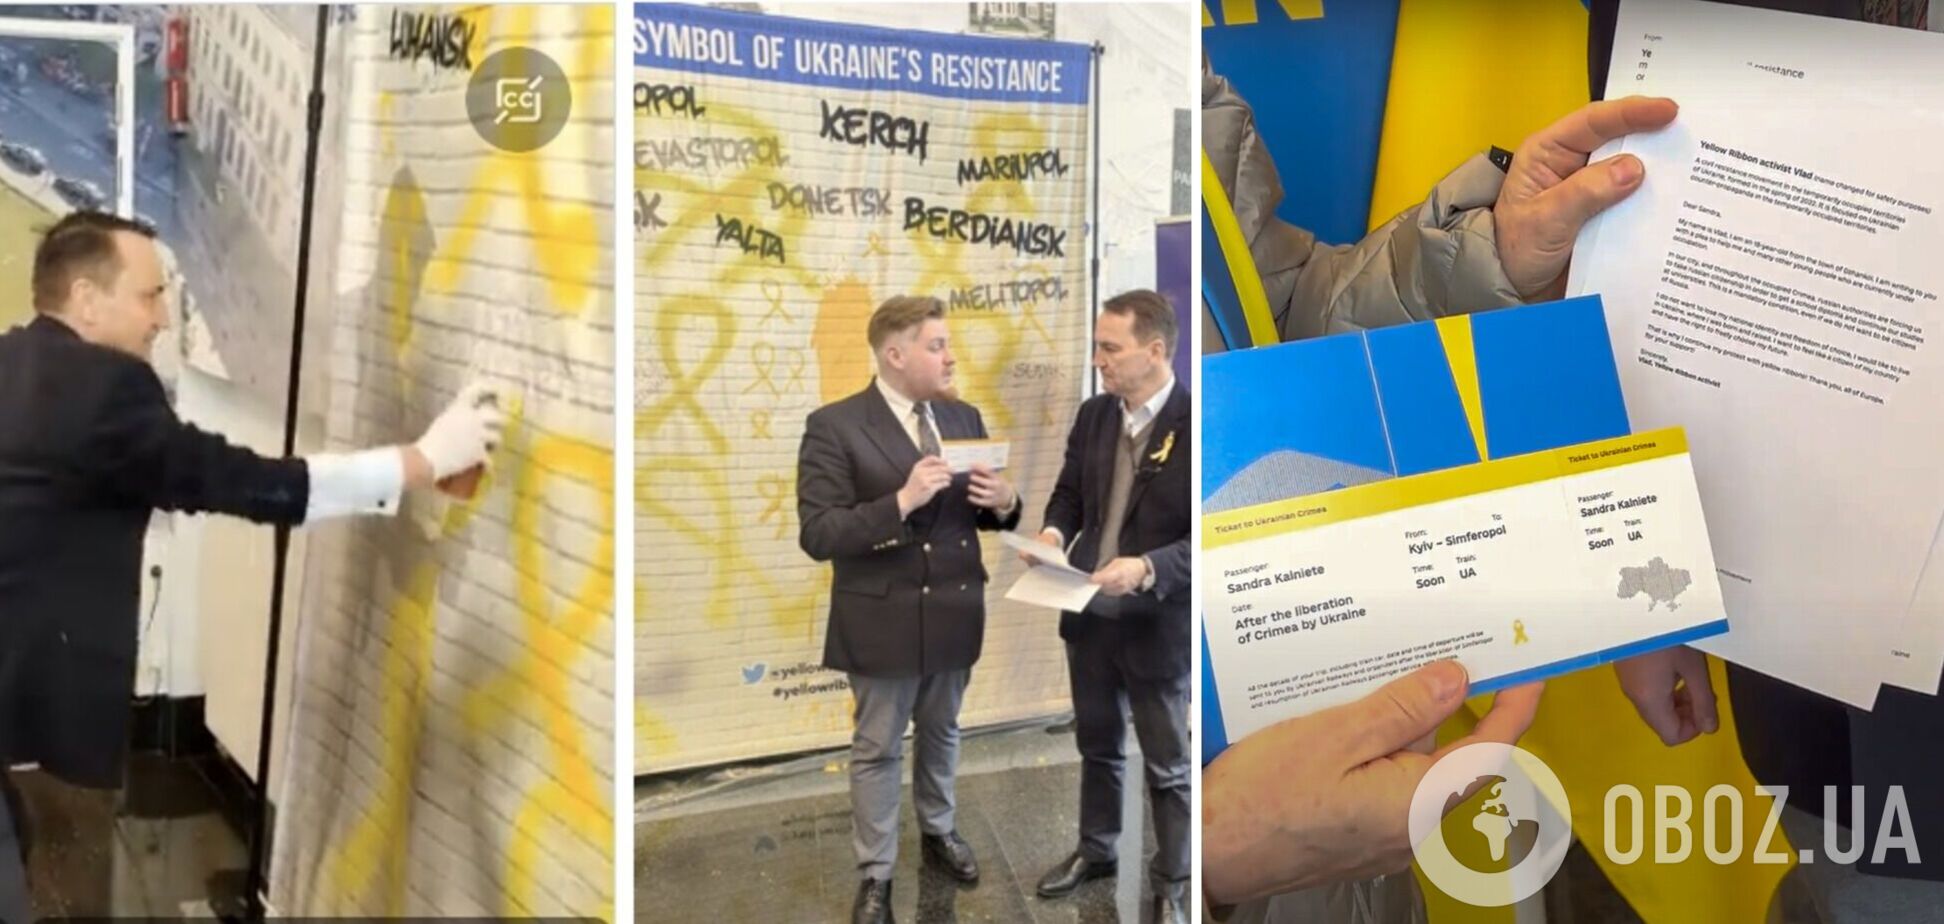 Партизаны движения 'Желтая лента' передали представителям Европарламента письма с историями сопротивления в Крыму и призвали поддержать активистов